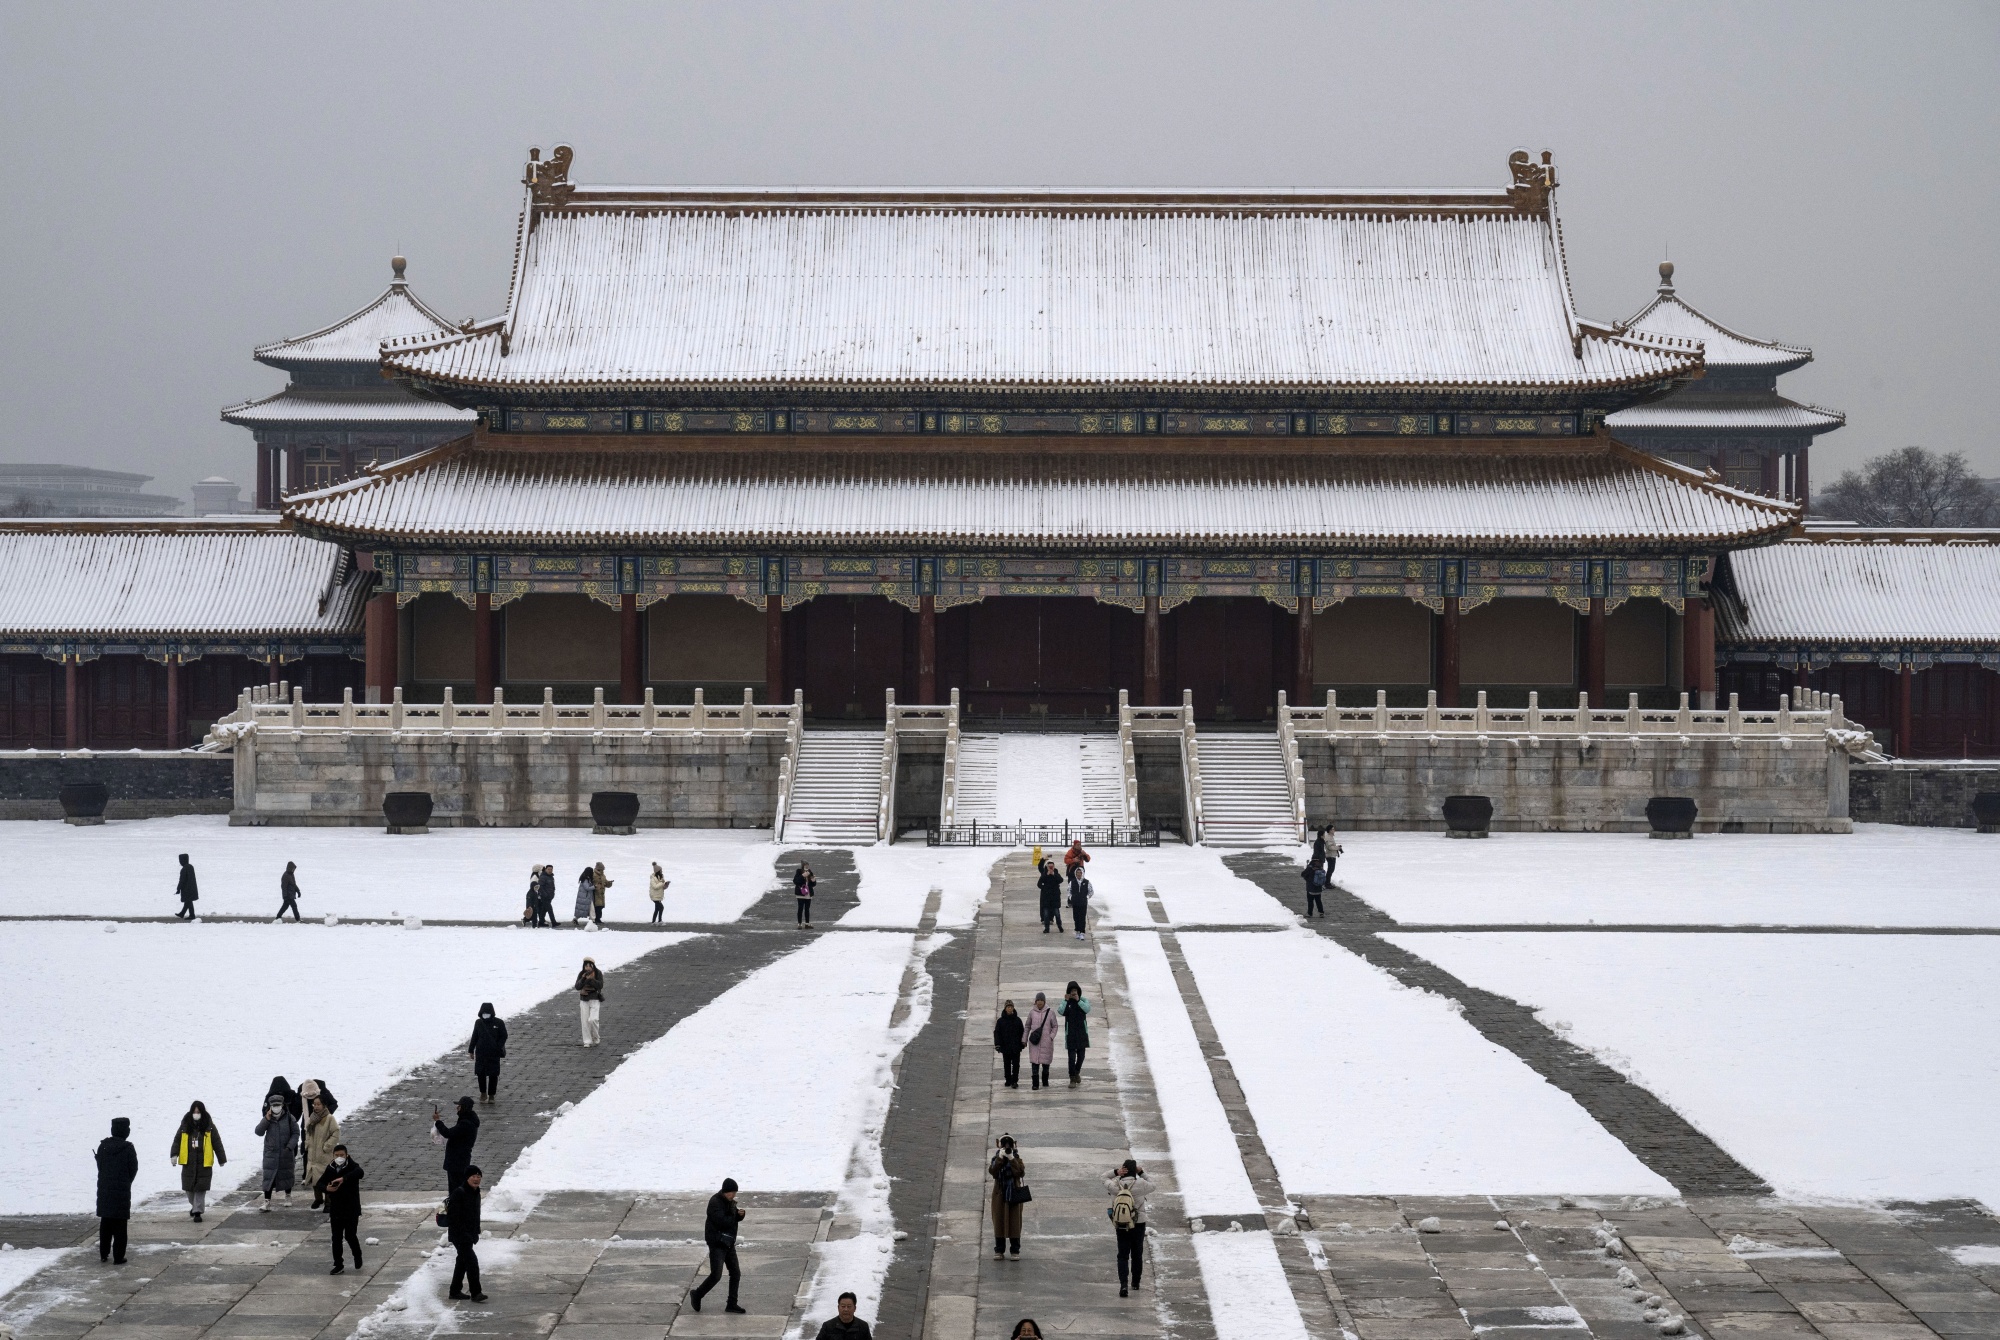 The Forbidden City in Beijing on Dec. 12